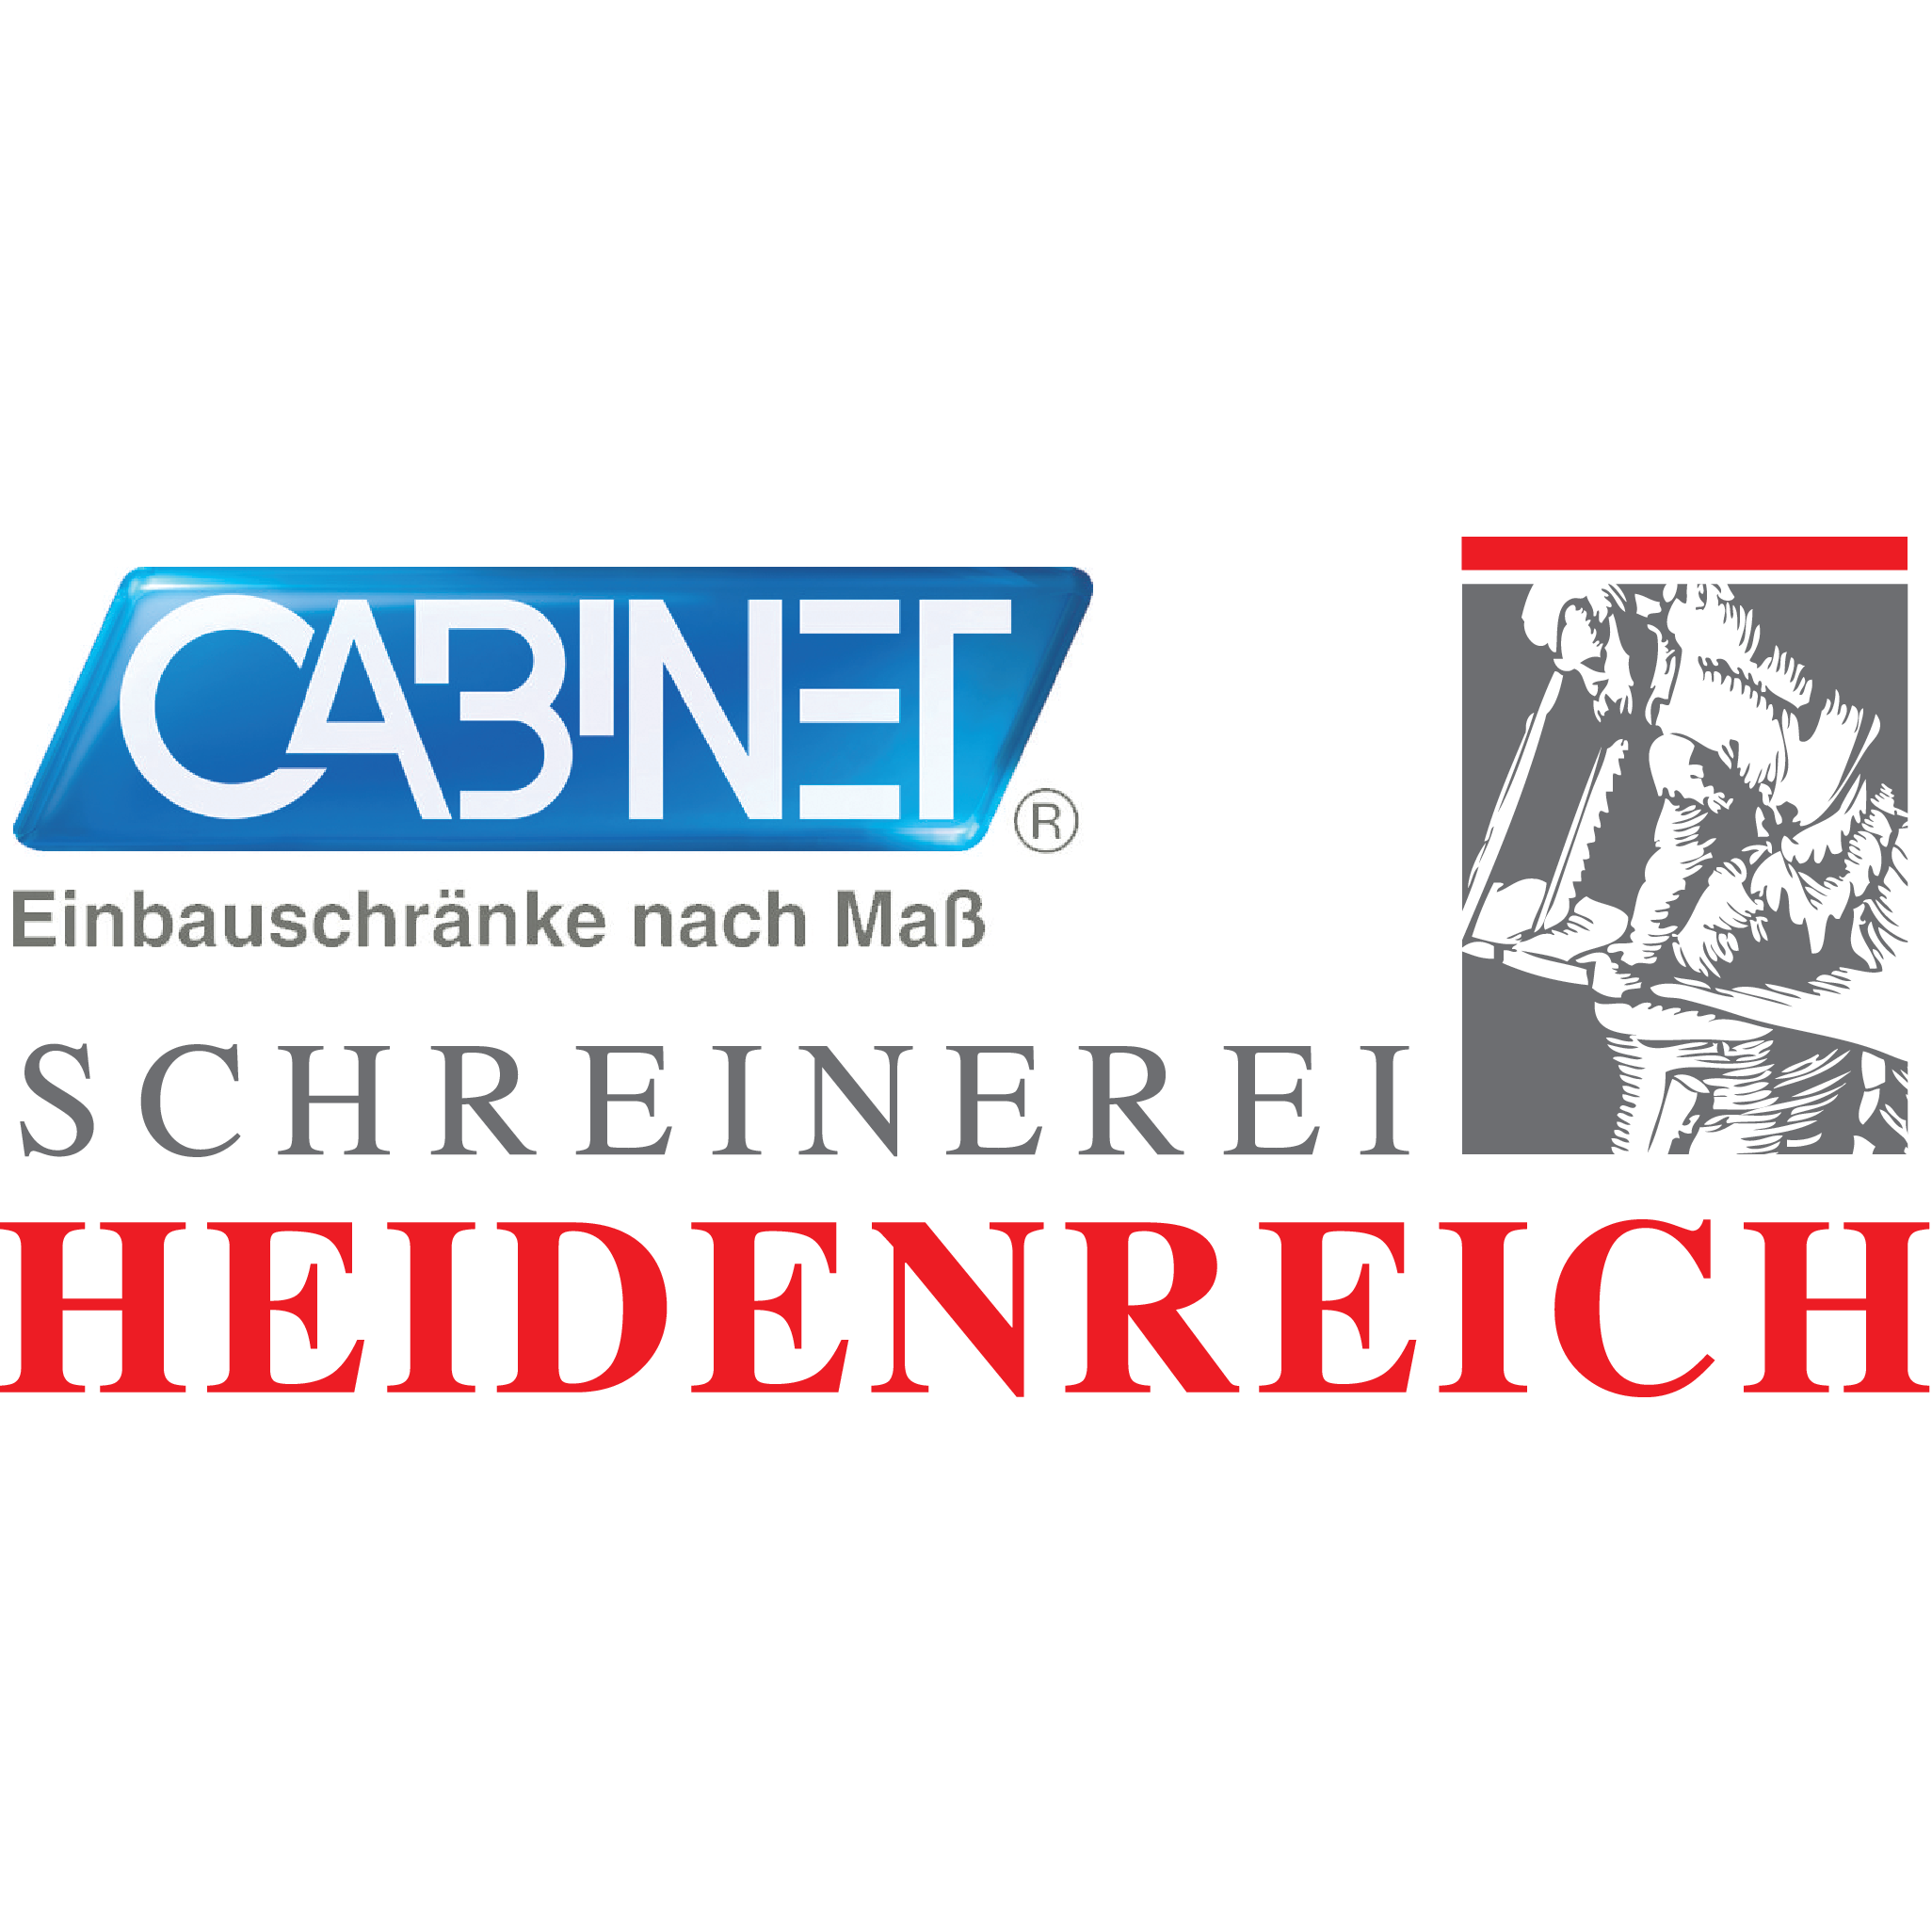 Schreinerei Heidenreich GmbH in Gesees - Logo